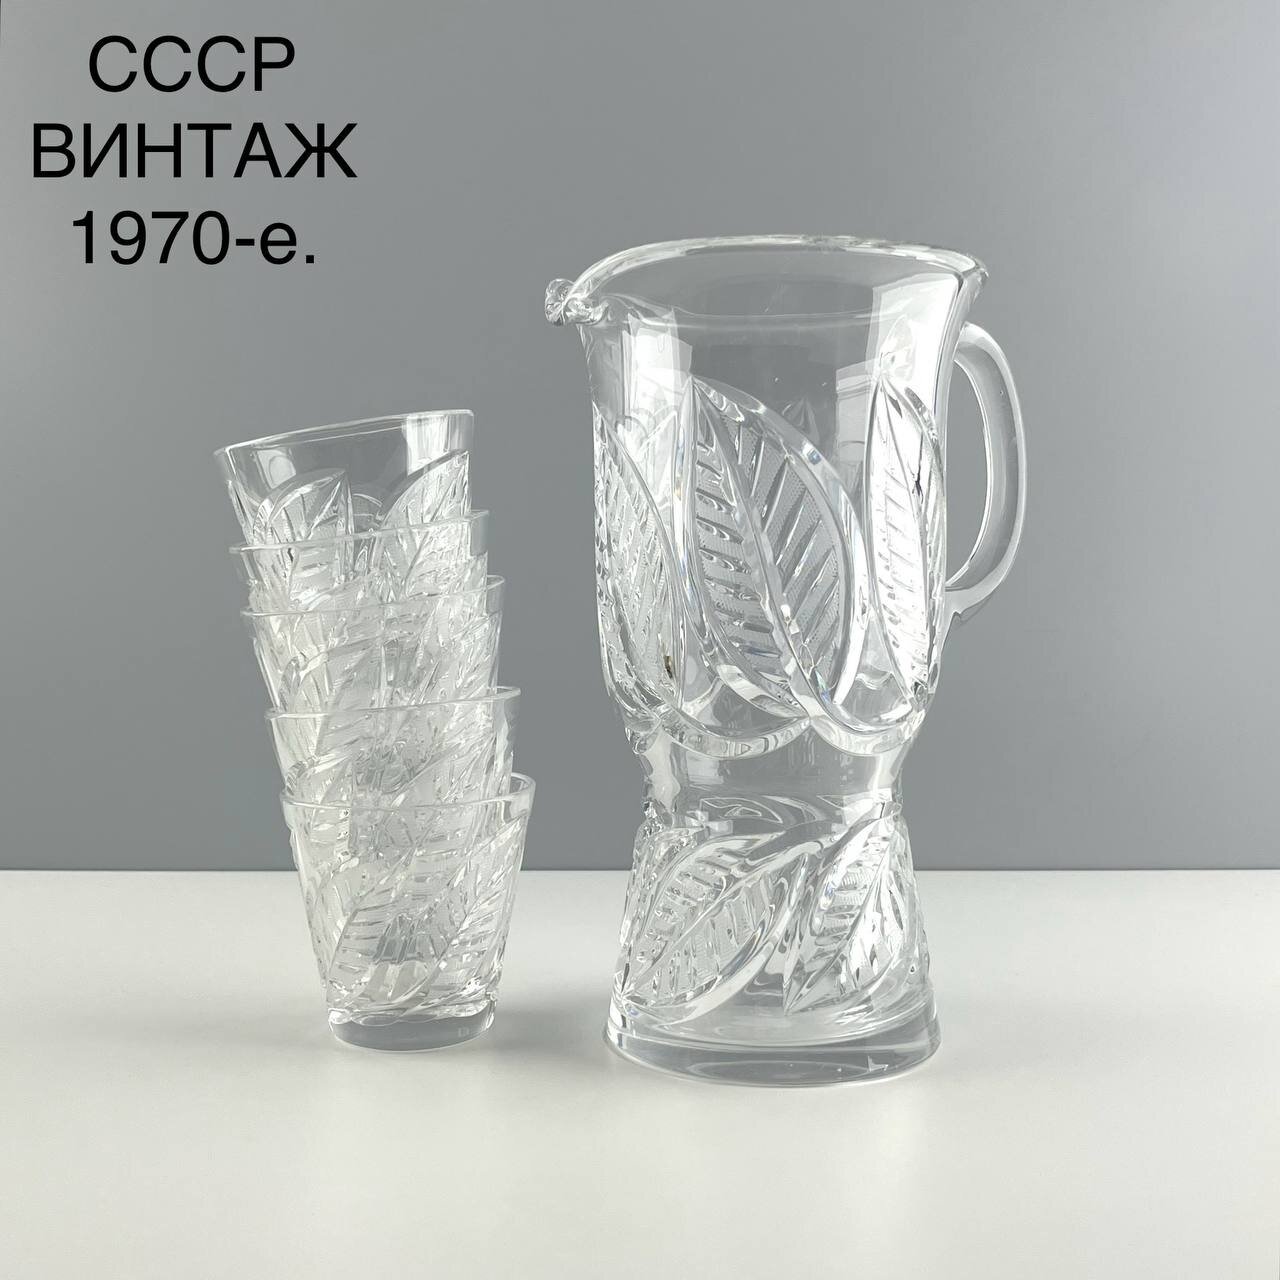 Винтажный набор для воды (кувшин + стаканы) "Венок". Хрусталь лзхс. СССР, 1970-е.